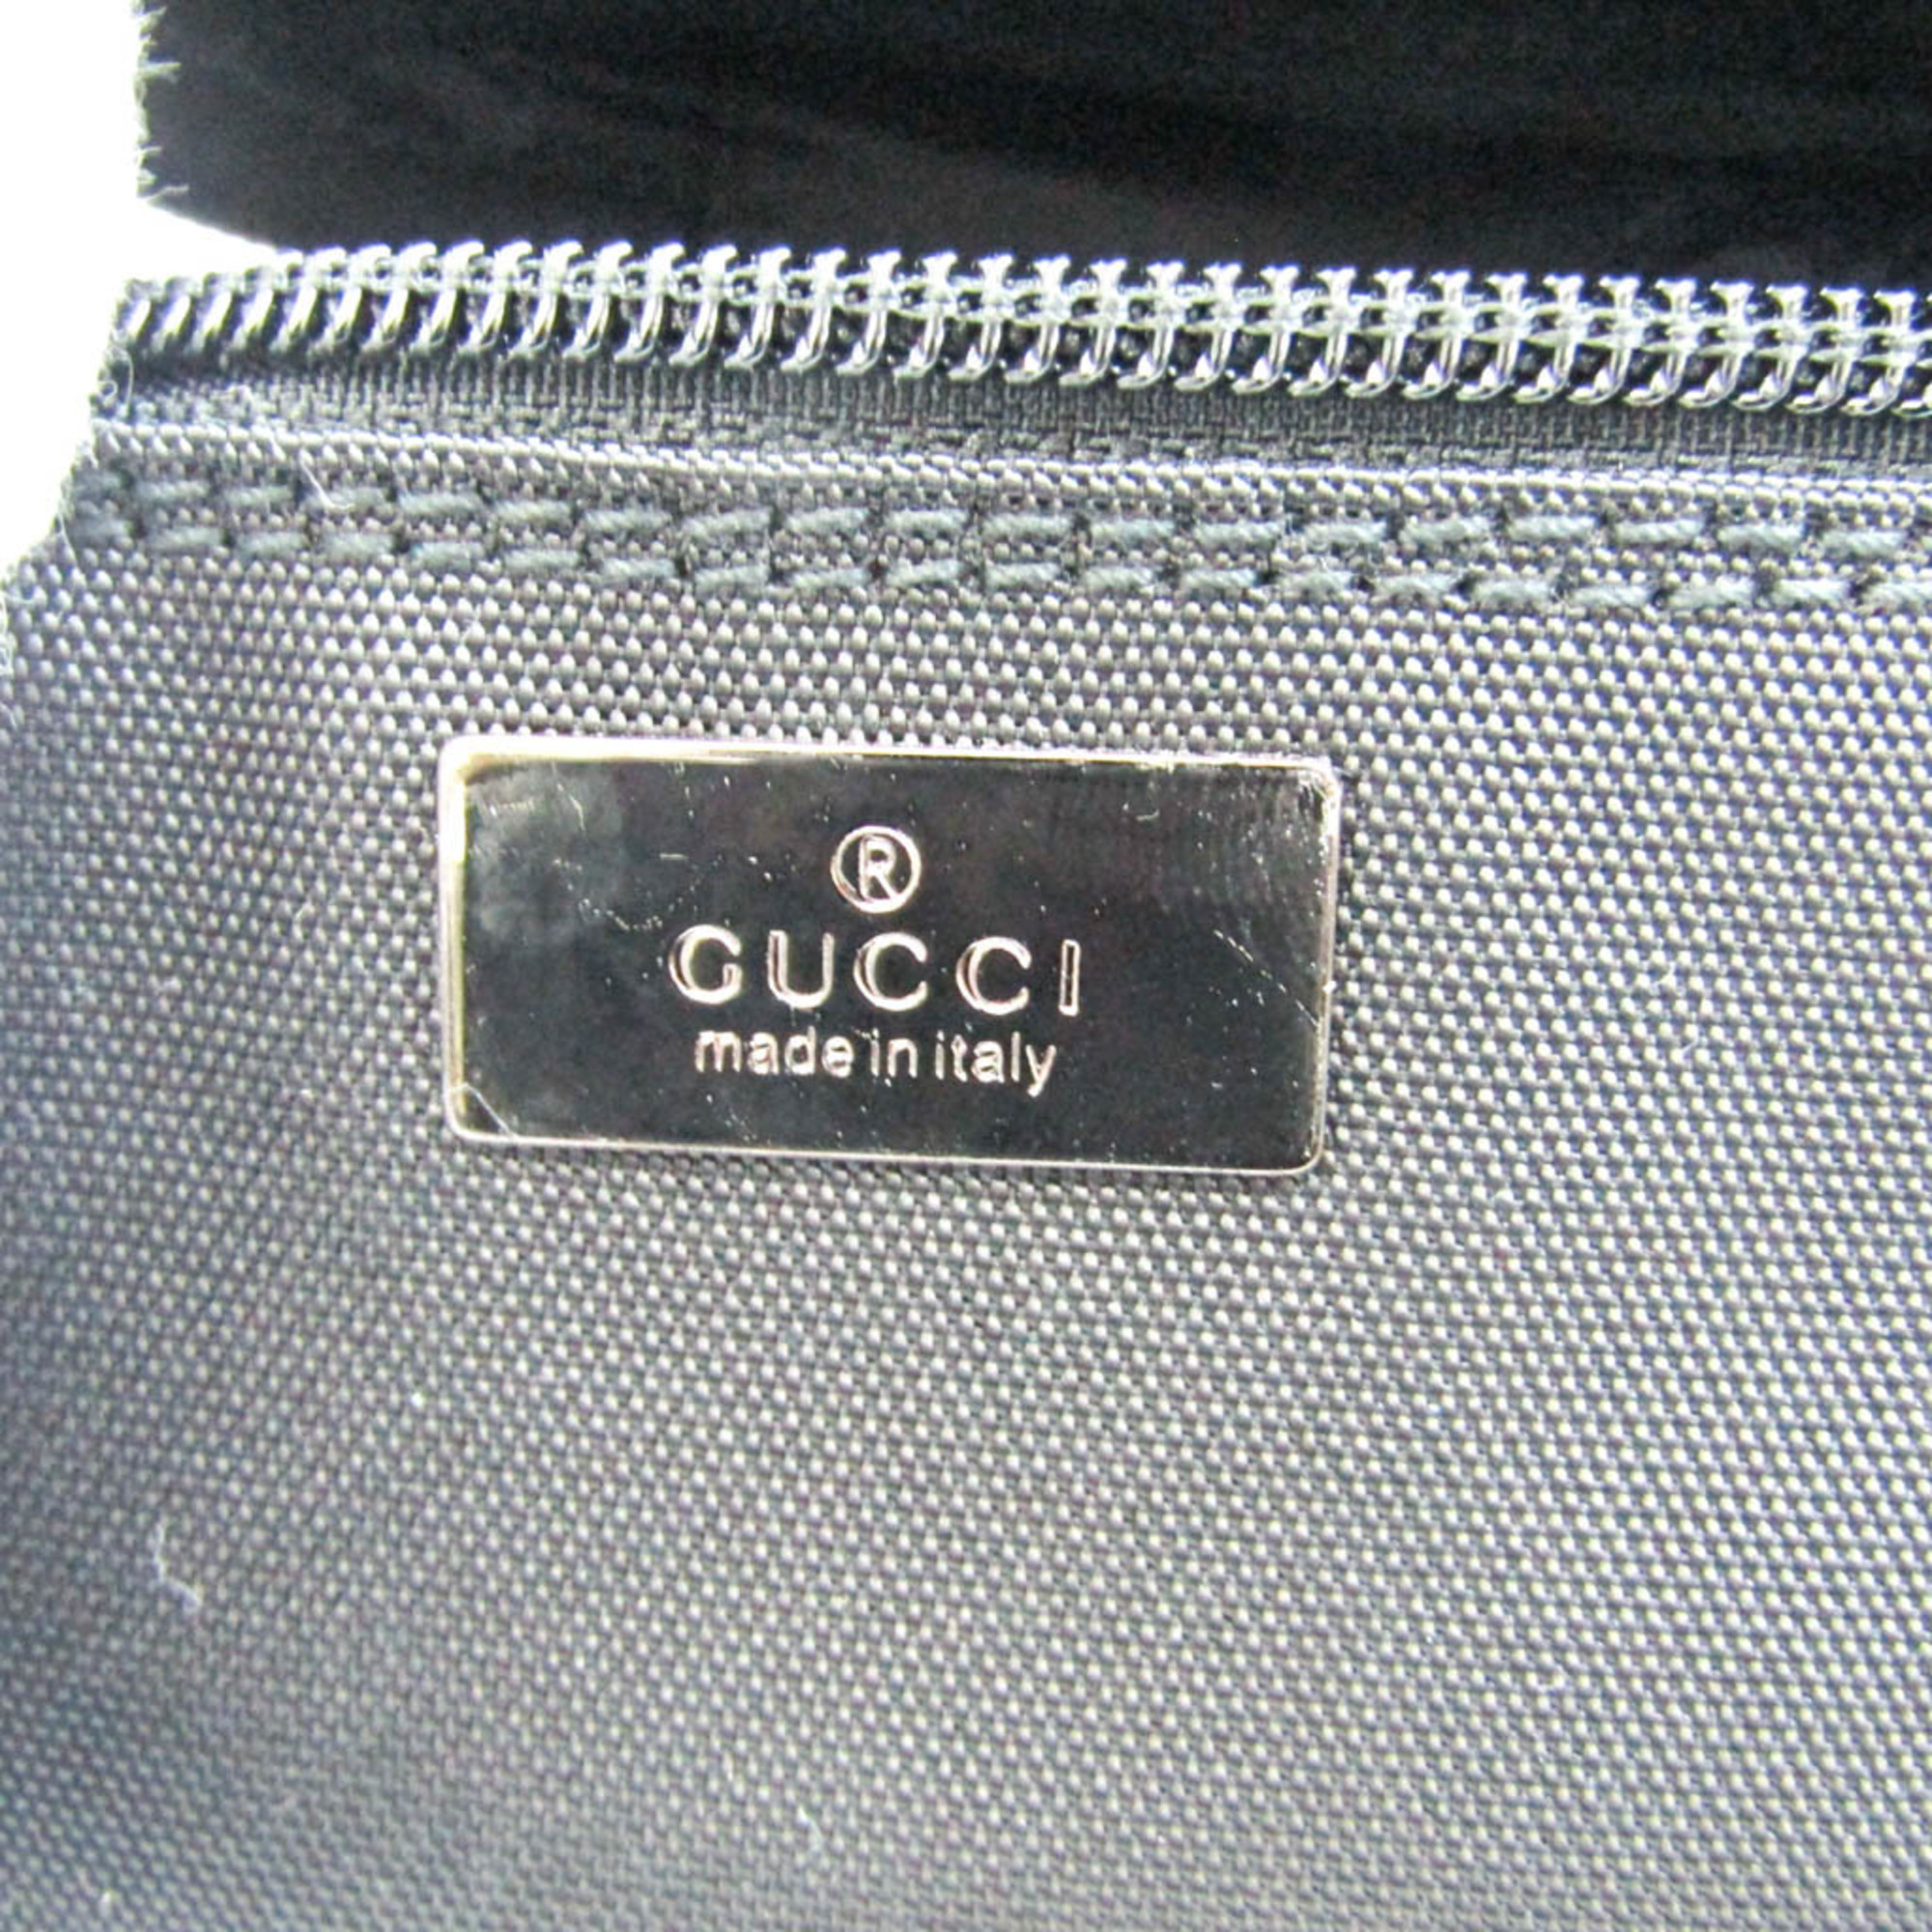 グッチ(Gucci) 039 0950 レディース ナイロン ポーチ ブラック